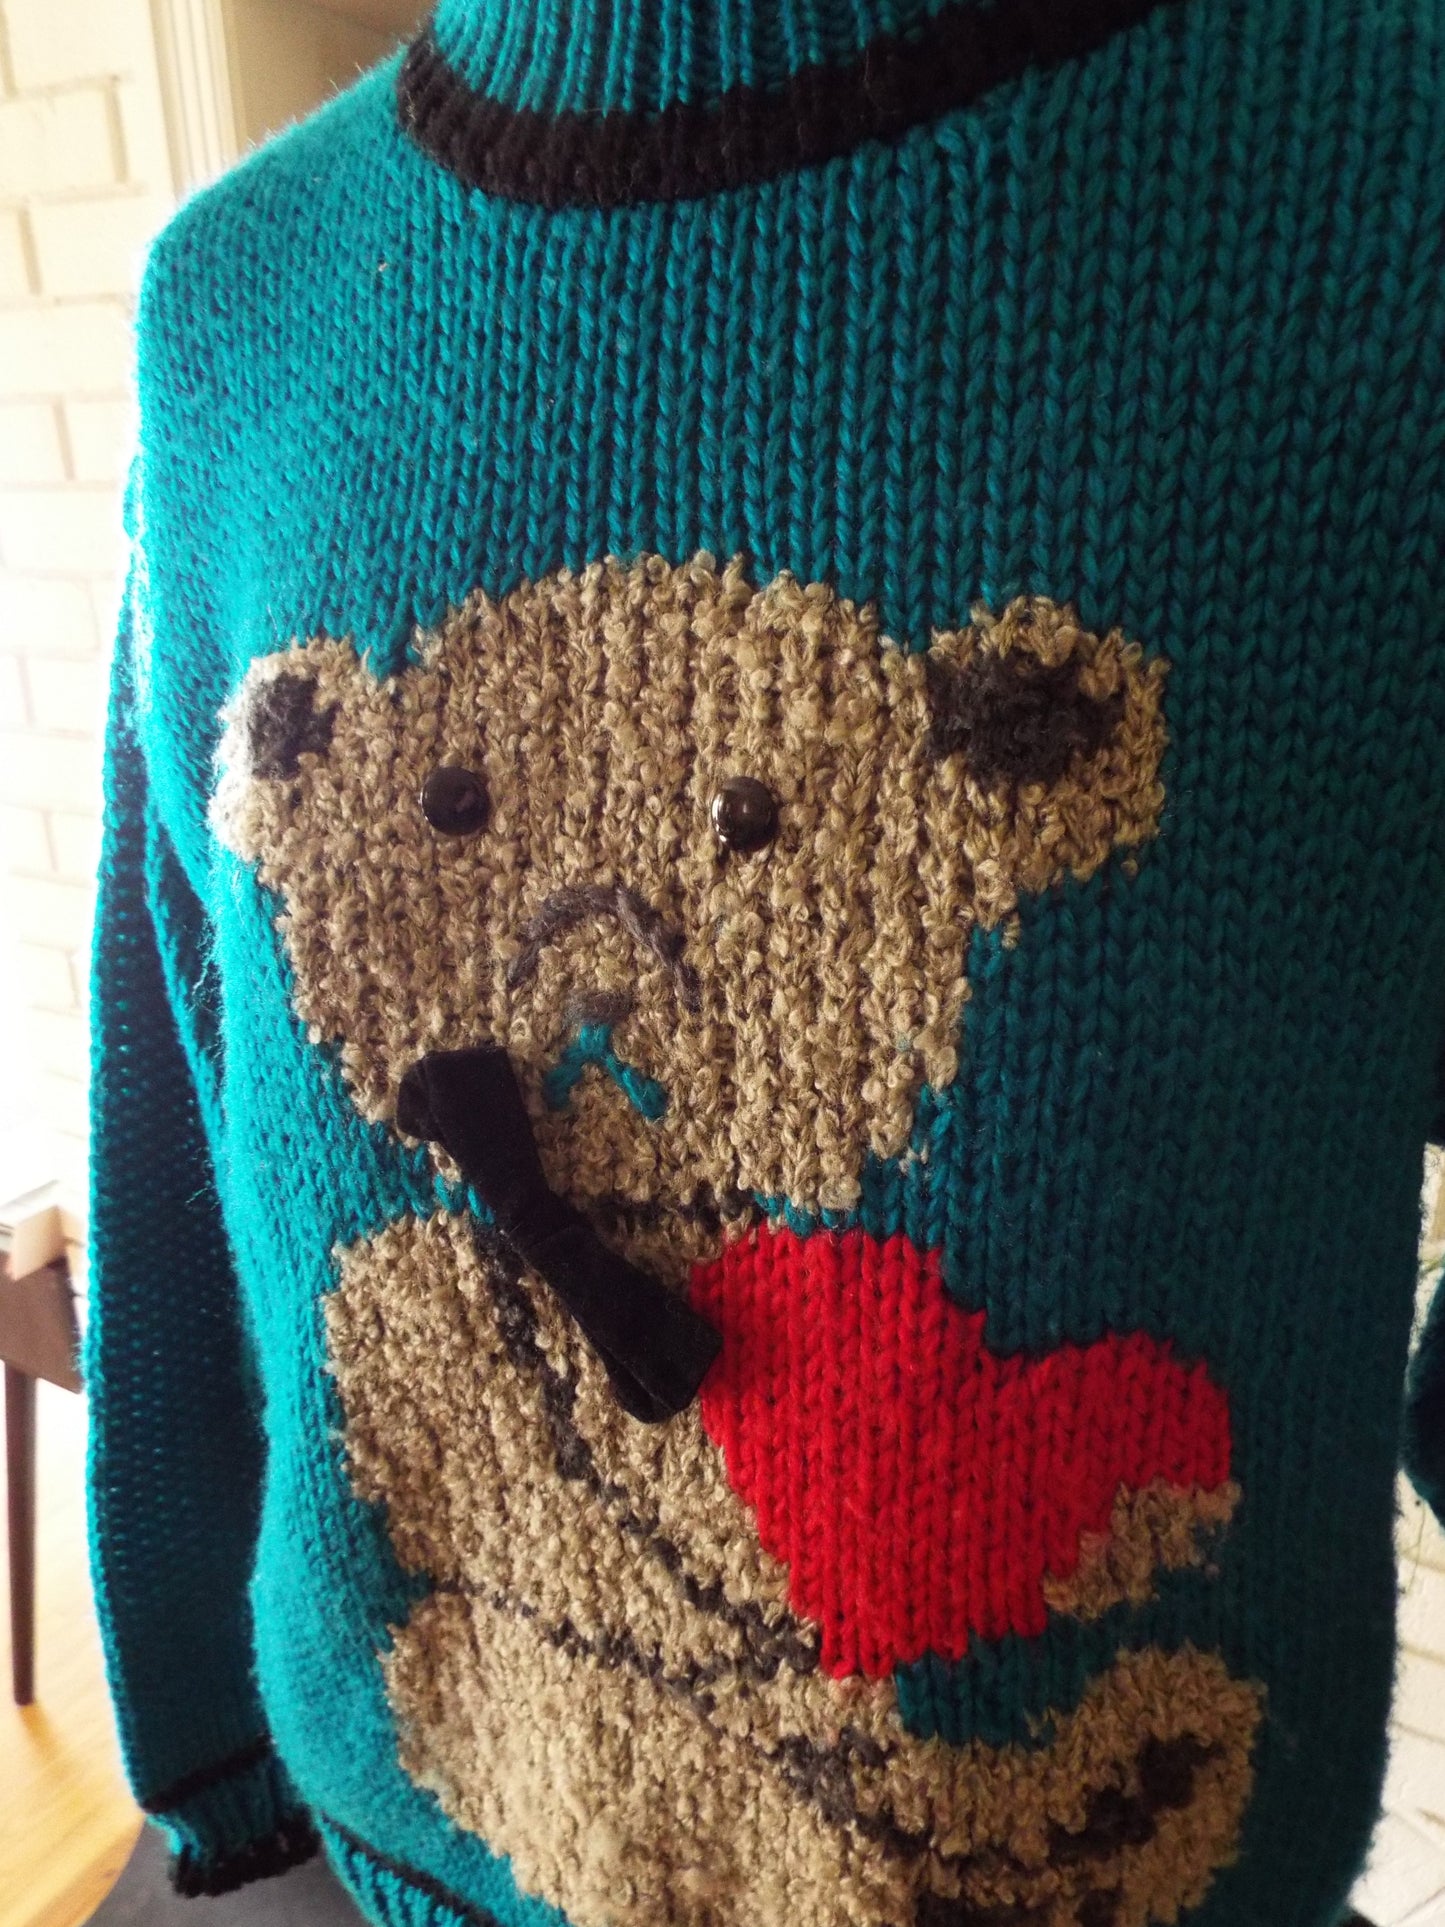 Vintage Teddy Bear Sweater by Evian II